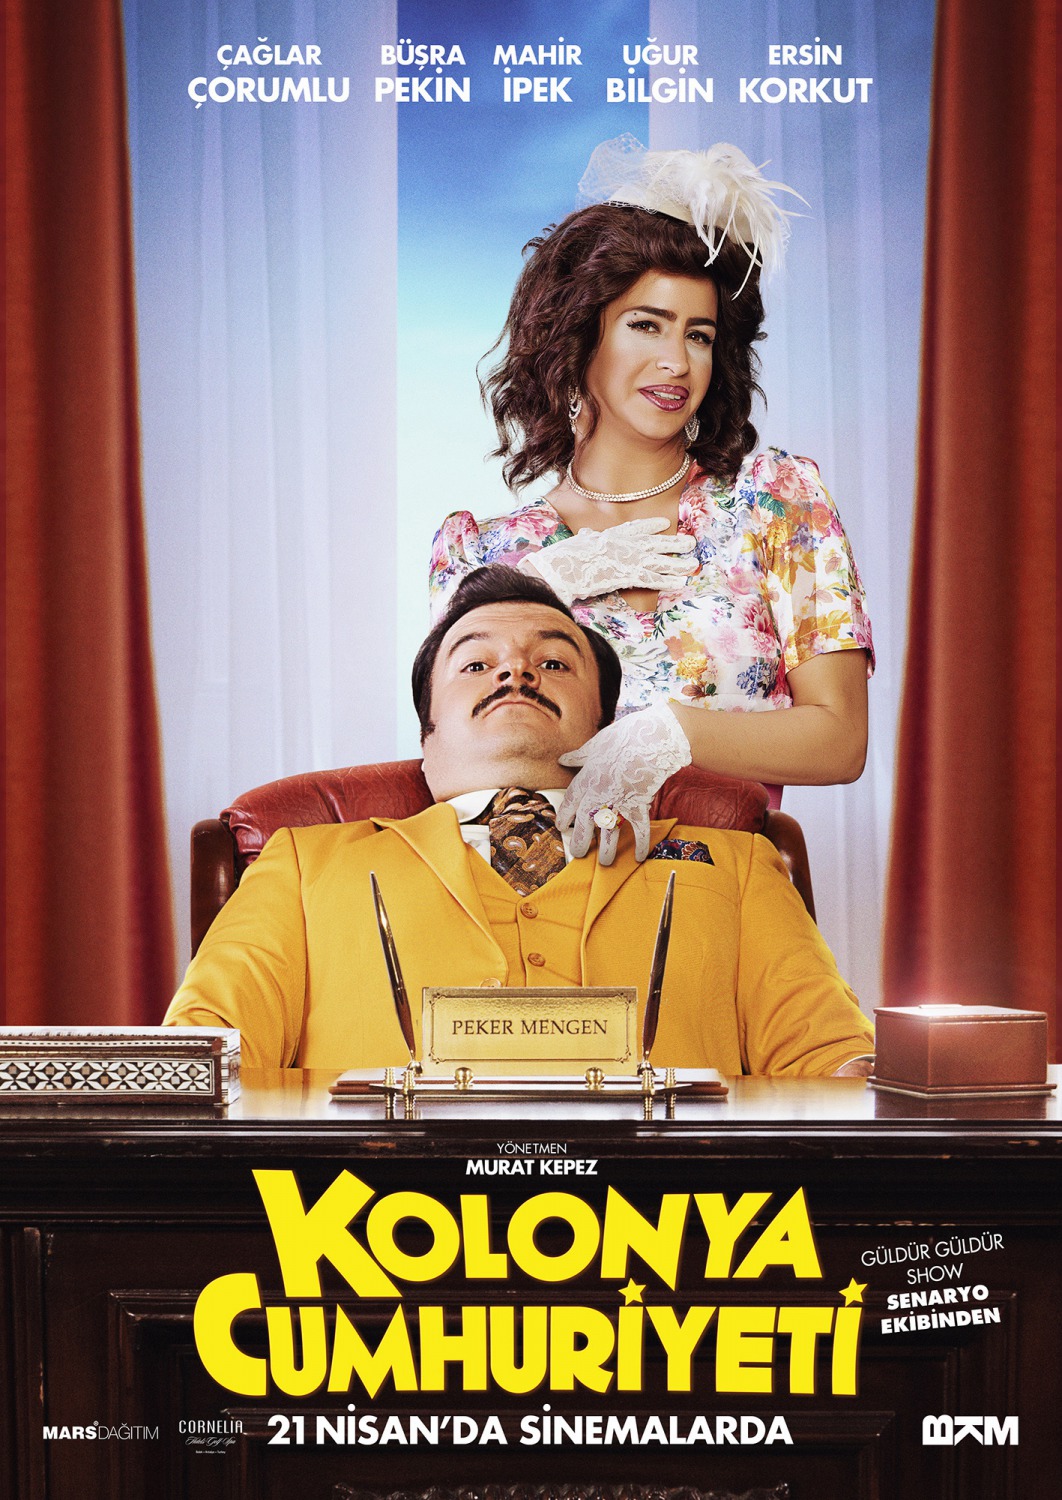 Extra Large Movie Poster Image for Kolonya Cumhuriyeti (#3 of 7)